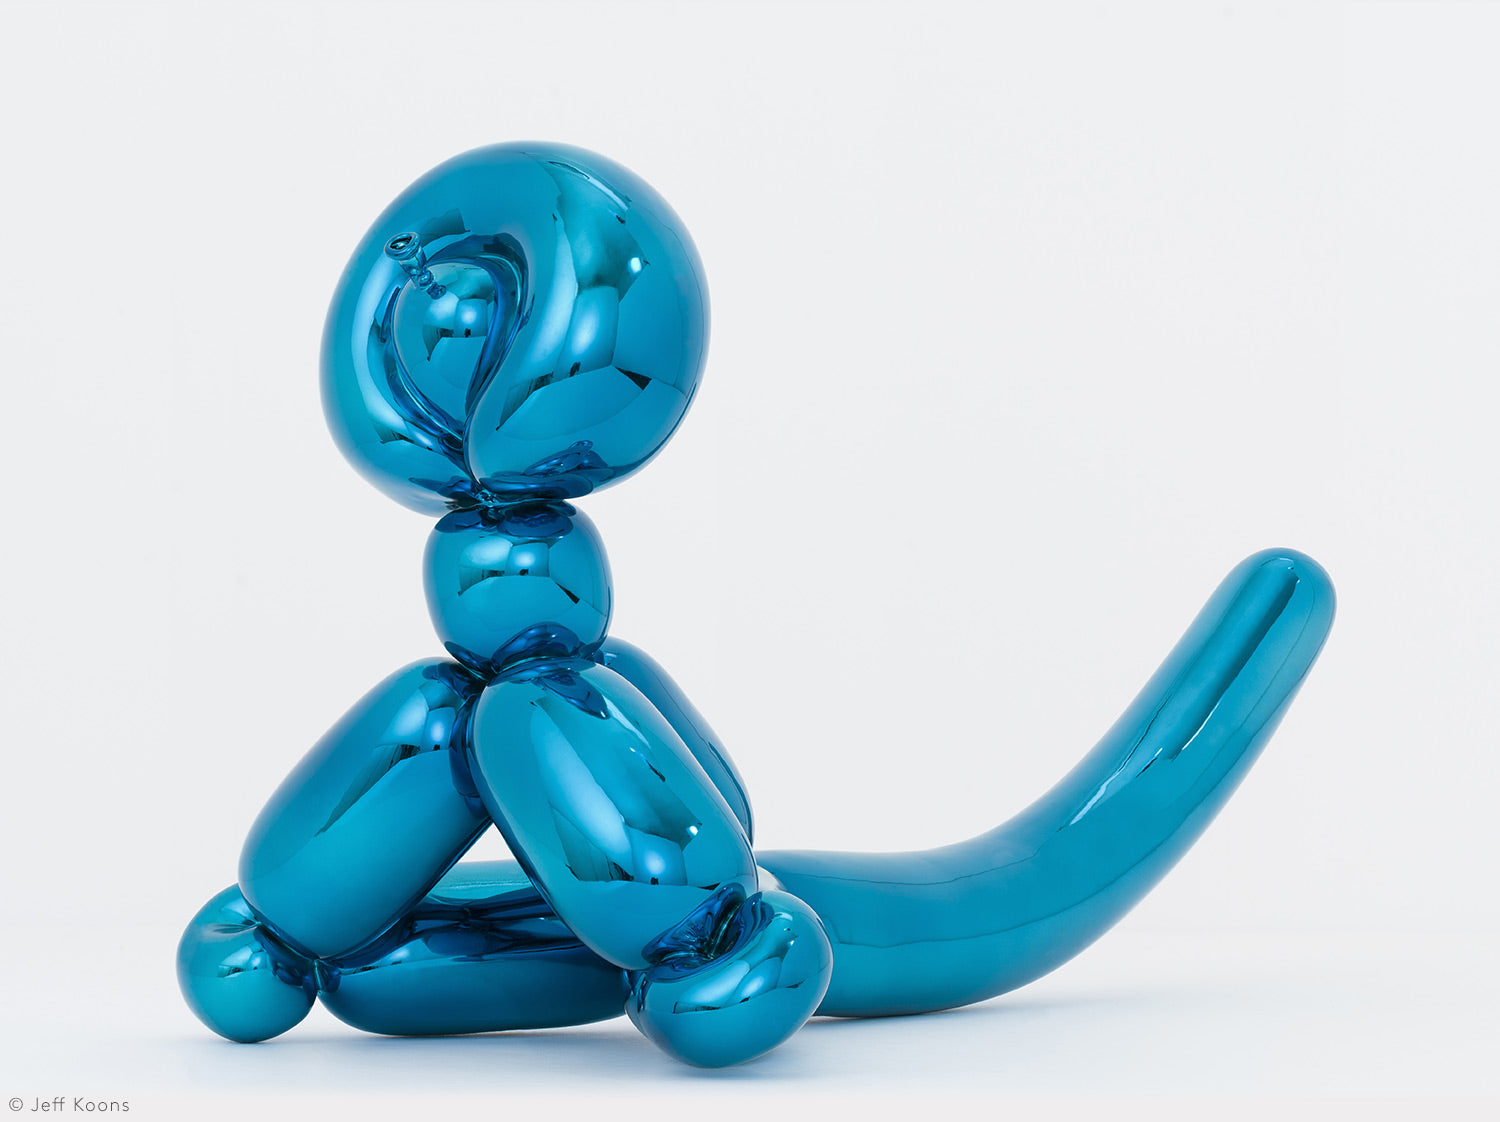 Balloon Monkey (Blue)